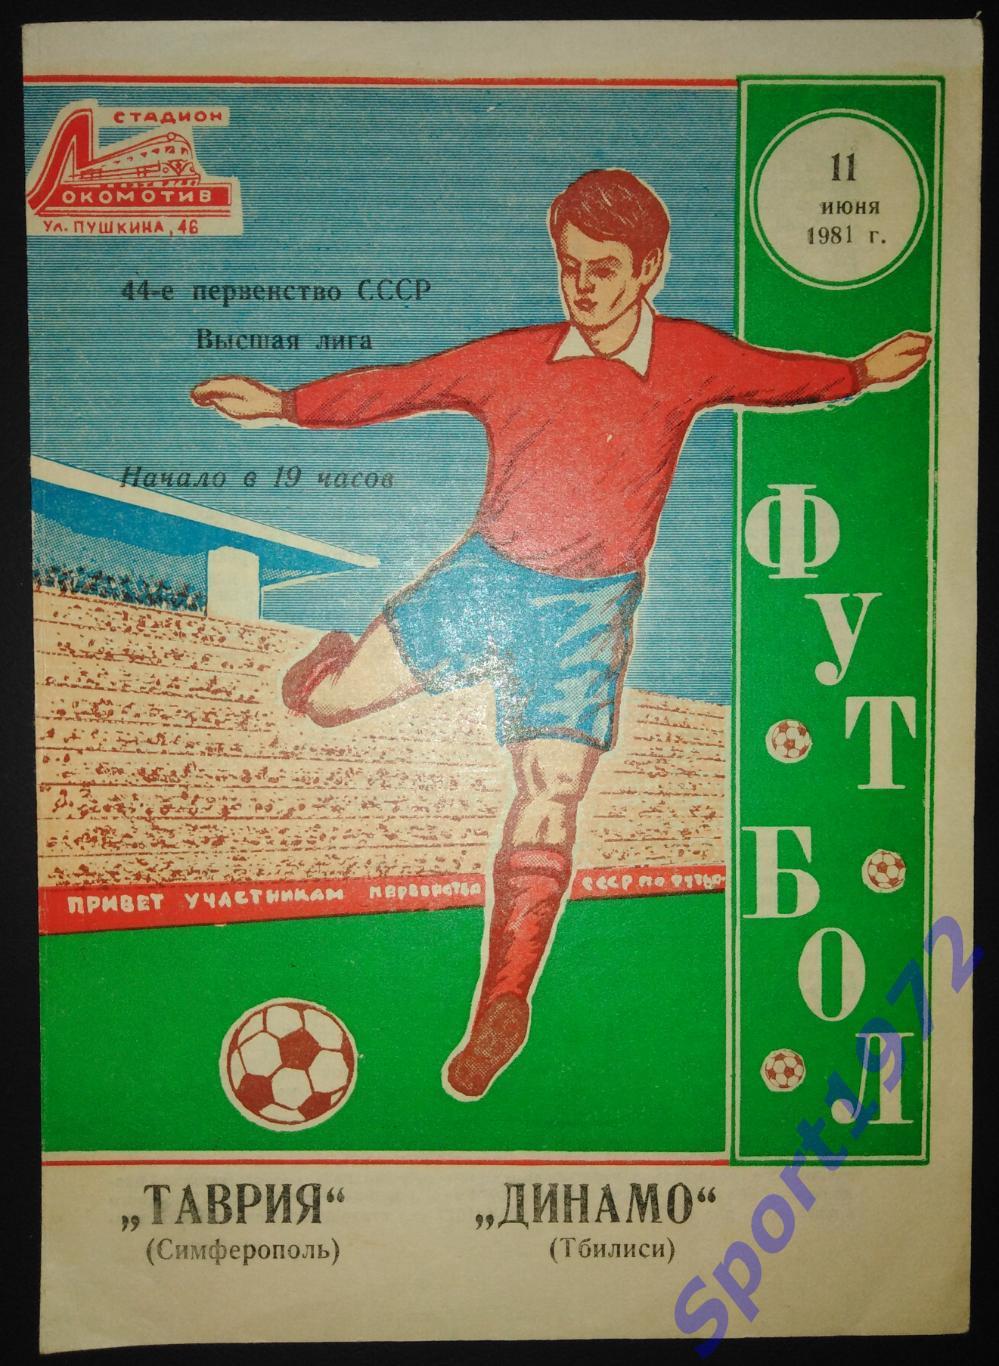 Таврия Симферополь - Динамо Тбилиси - 11.06.1981